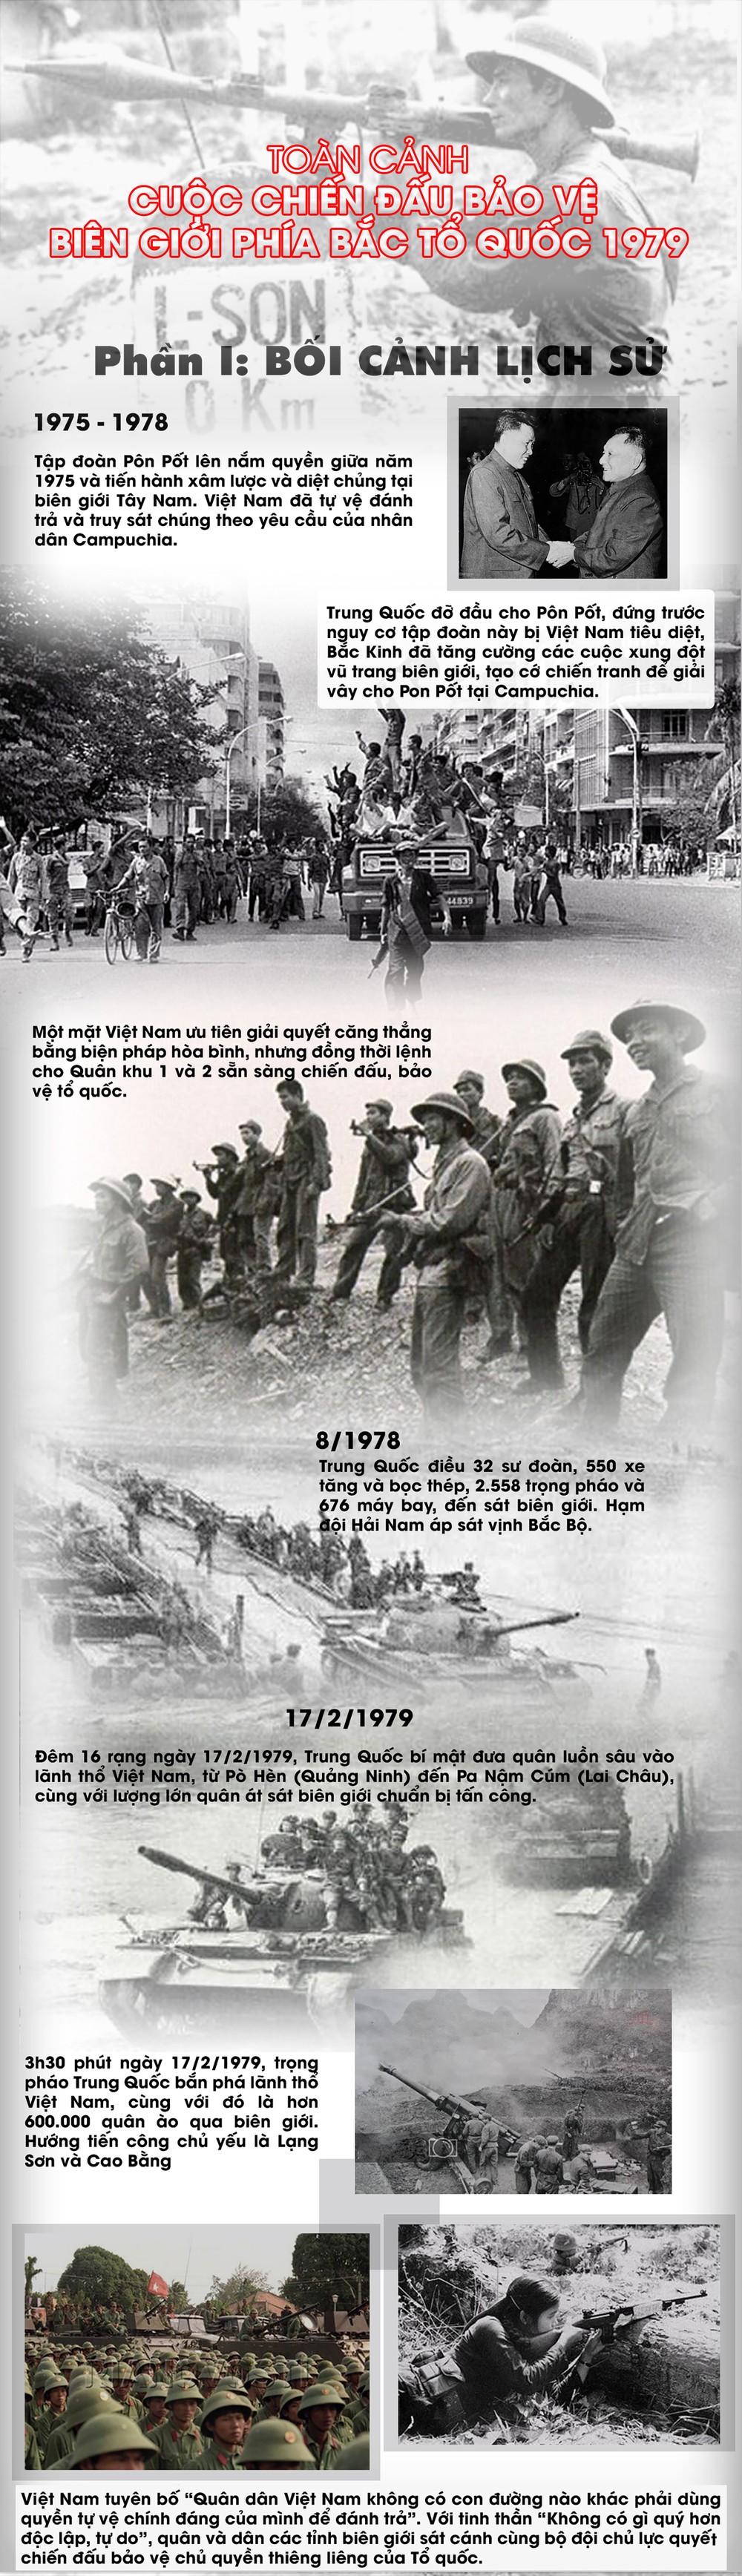 [Info] Toàn cảnh cuộc chiến đấu bảo vệ biên giới phía Bắc 1979 (phần I) - Bối cảnh lịch sử ảnh 2